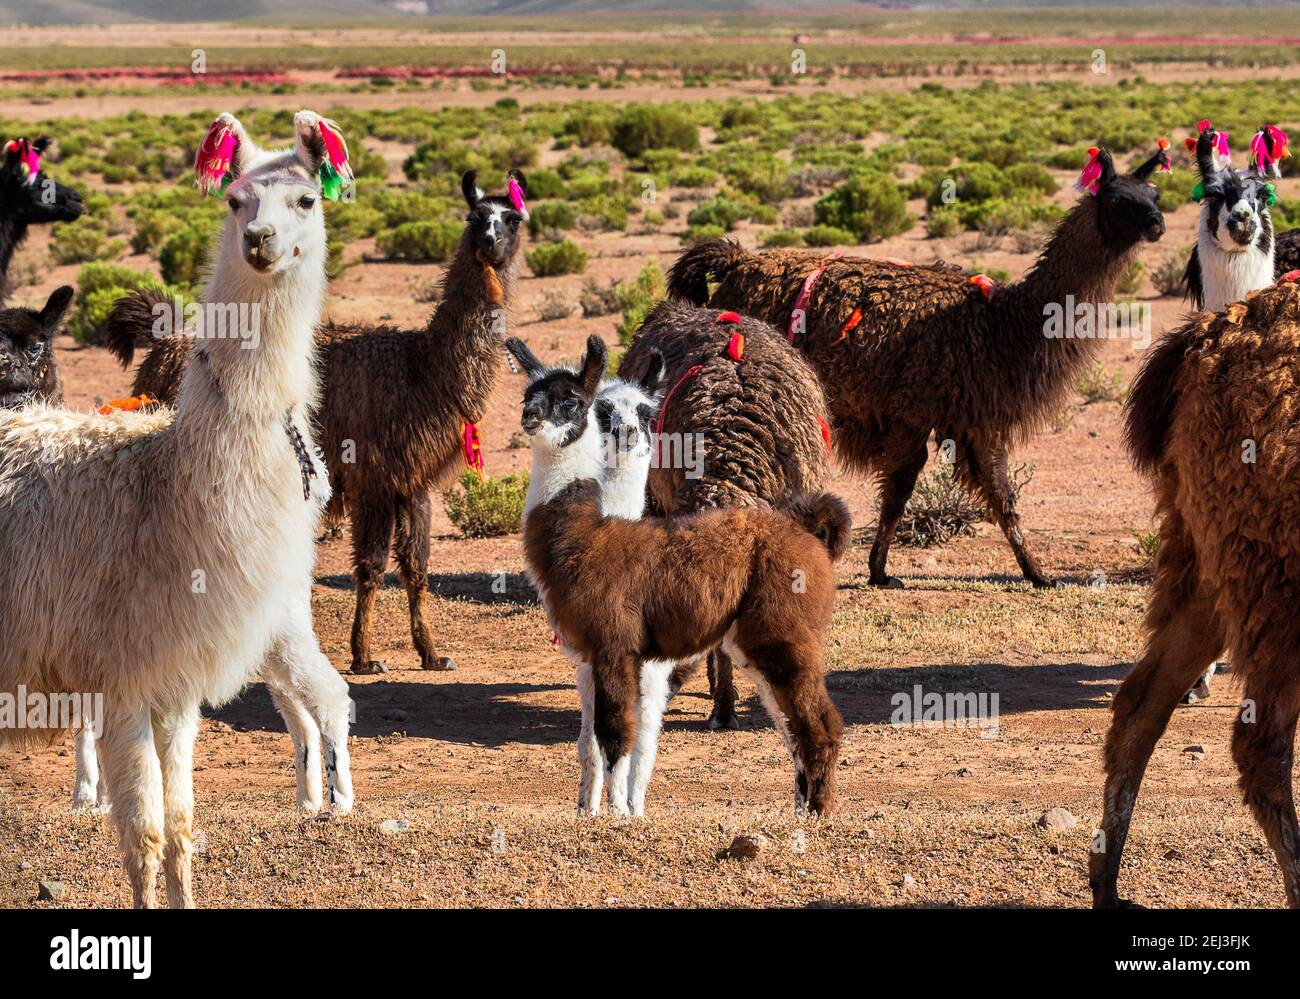 Gros plan sur des lamas drôles relaxants dans la vallée verdoyante. Altiplano, Bolivie, Amérique du Sud Banque D'Images